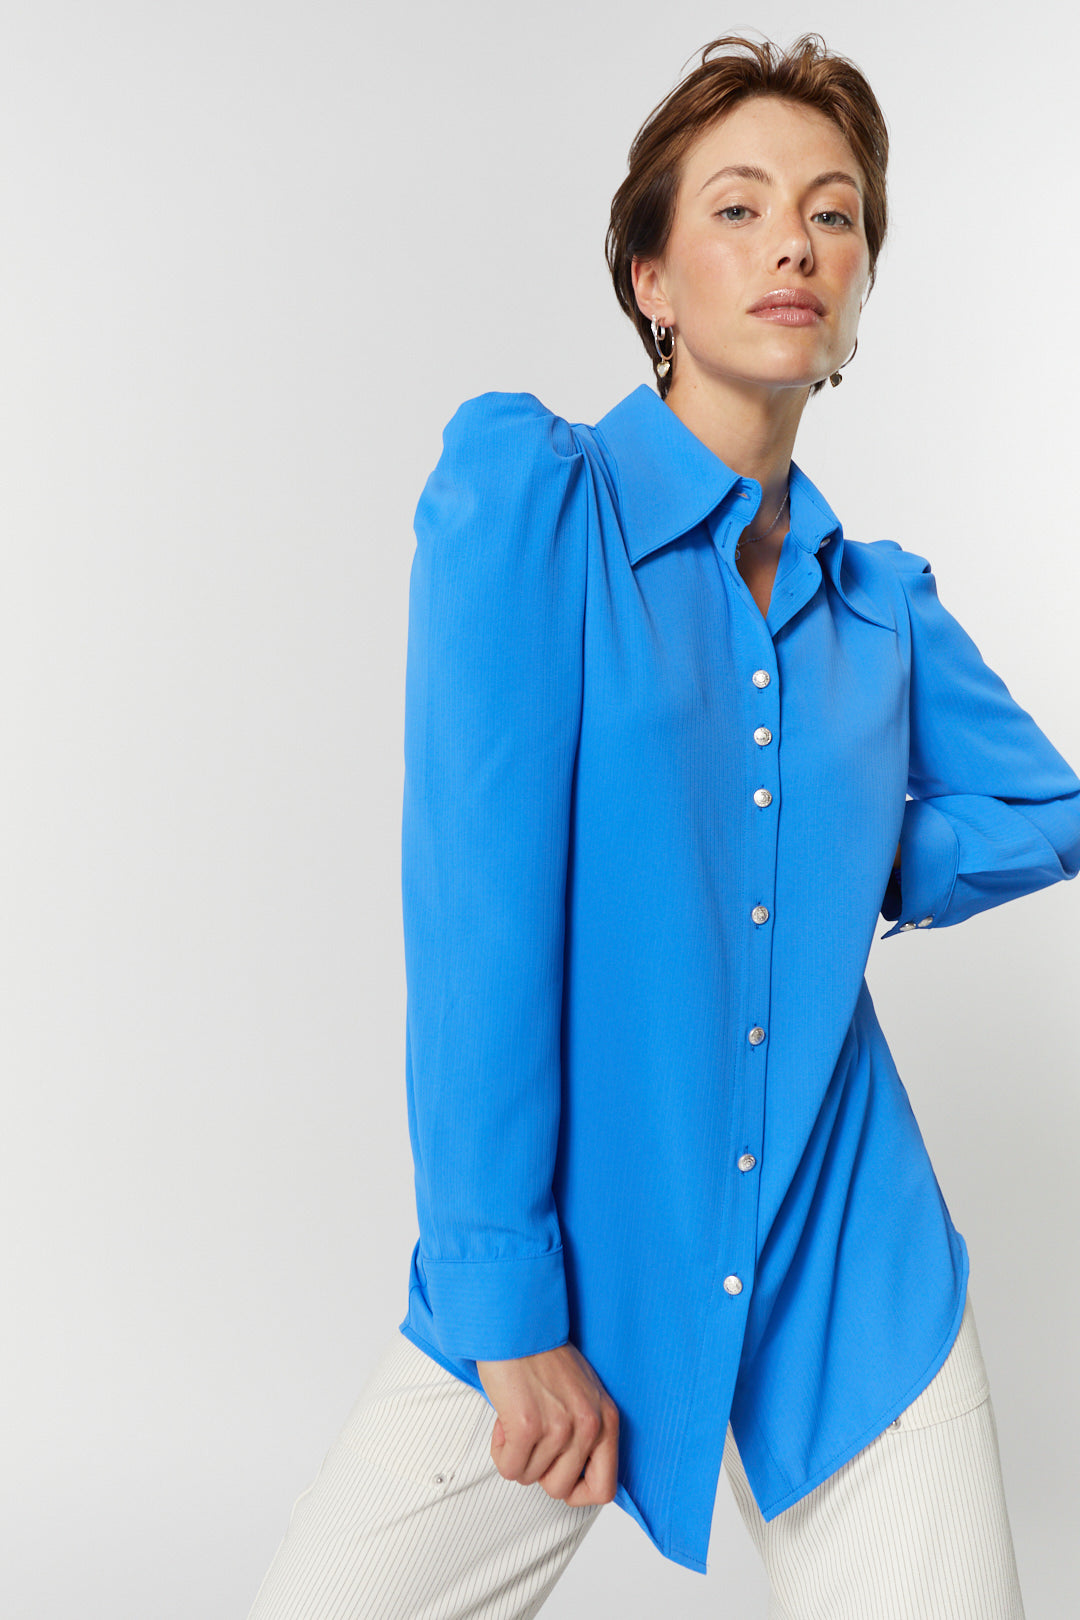 Chemise bleu royal manches bouffantes | Adele